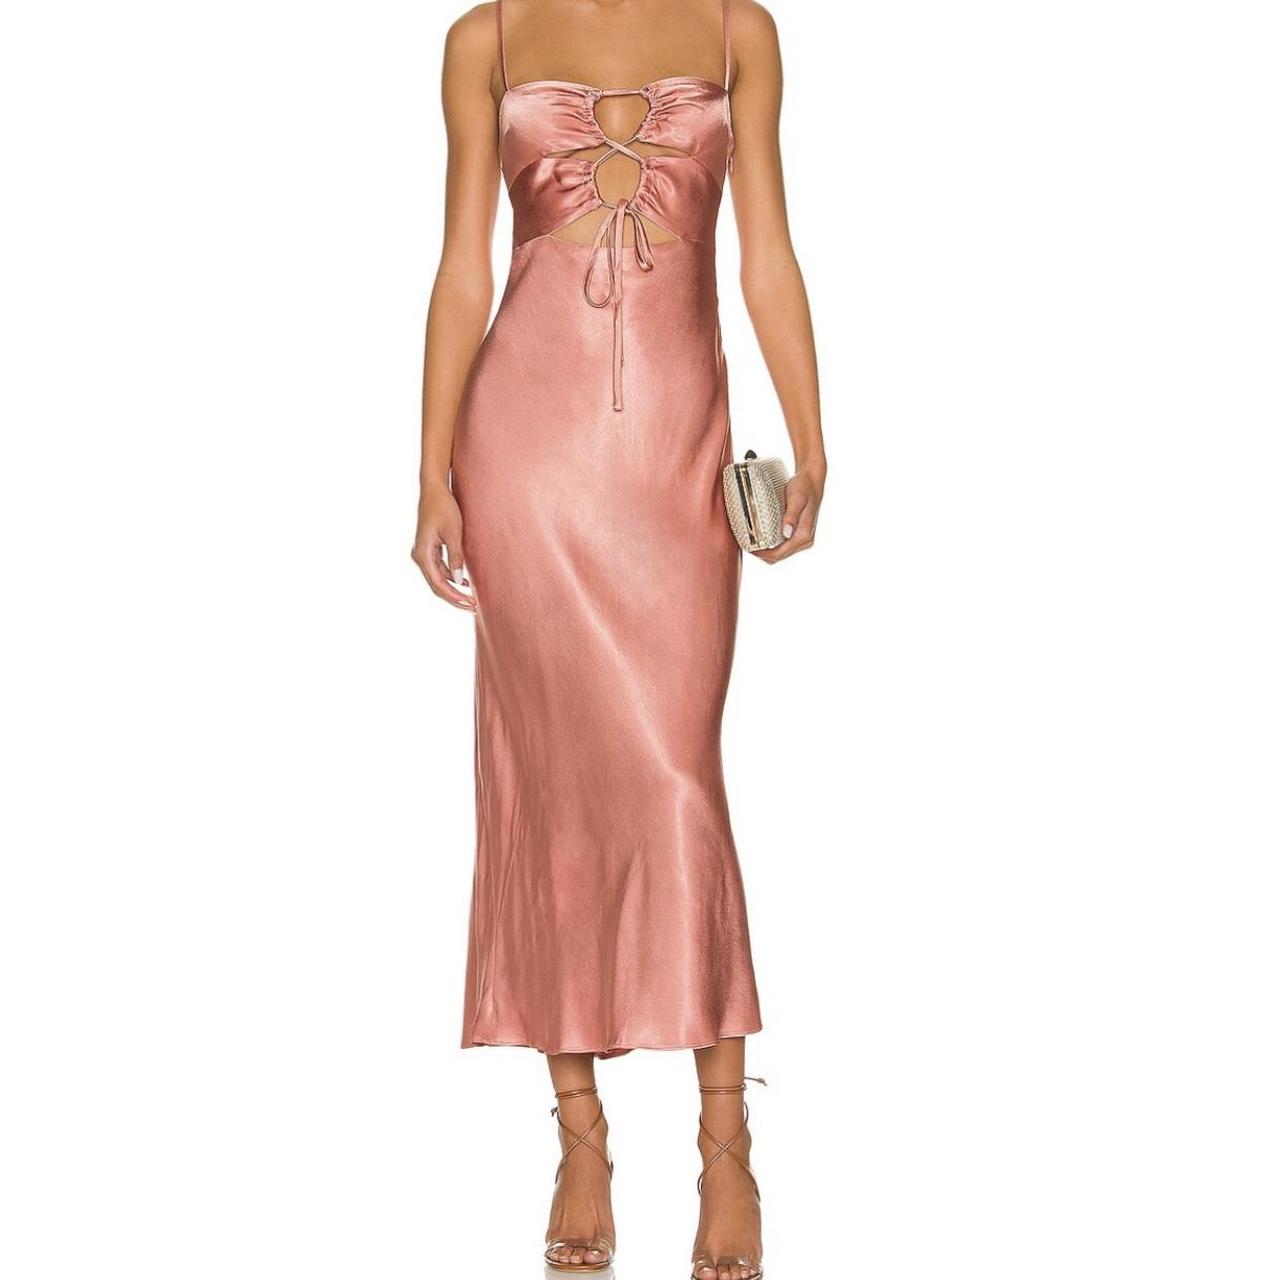 Shona Joy Lace Up Midi Dress Size: 2 I’ve only worn... - Depop